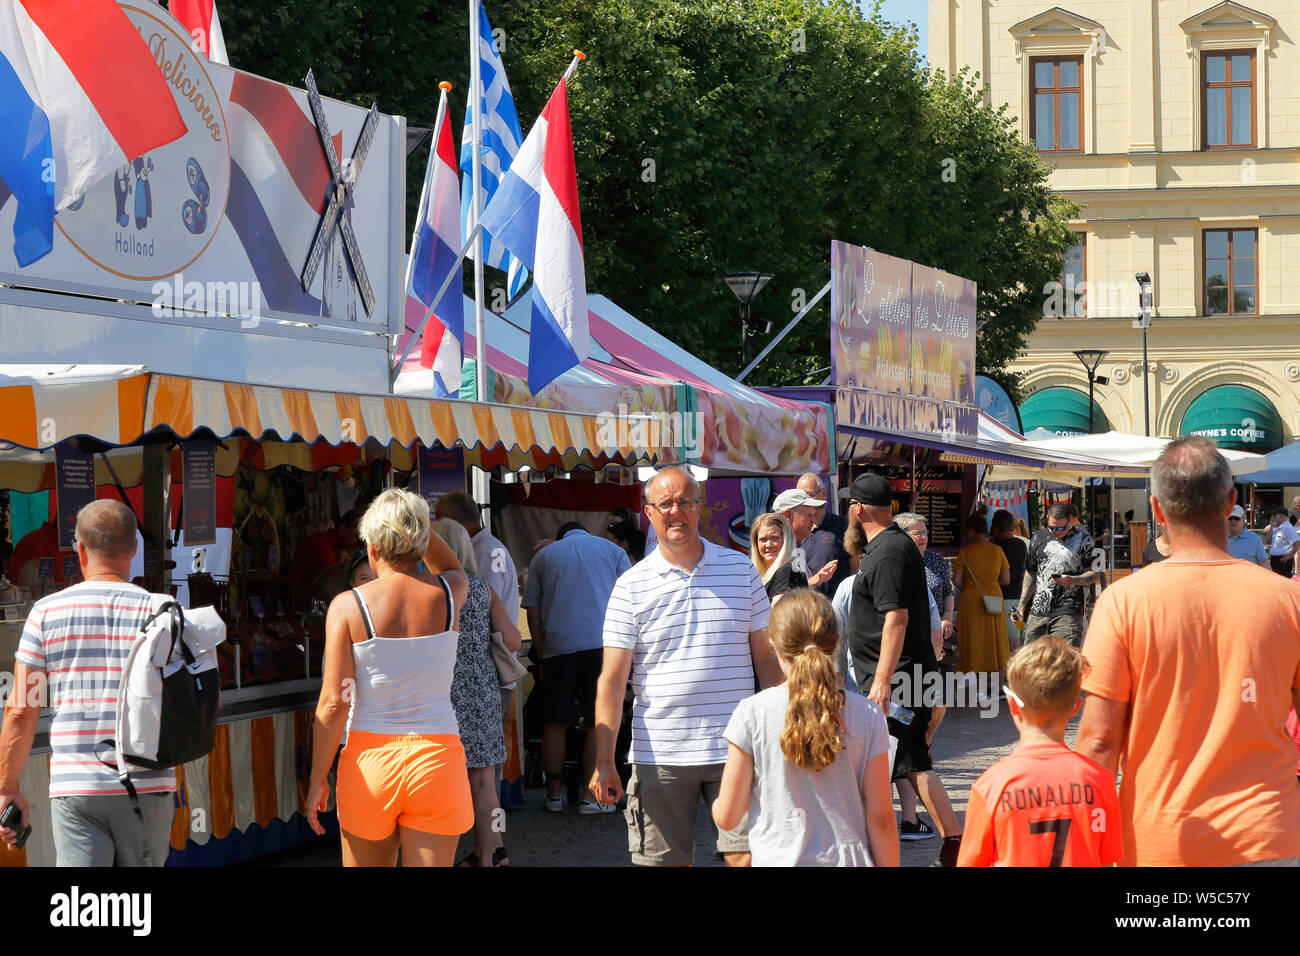 Karlstad, Svezia - 26 Luglio 2019: vista di una affollata piazza cittadina che ospita una cucina internazionale evento. Foto Stock